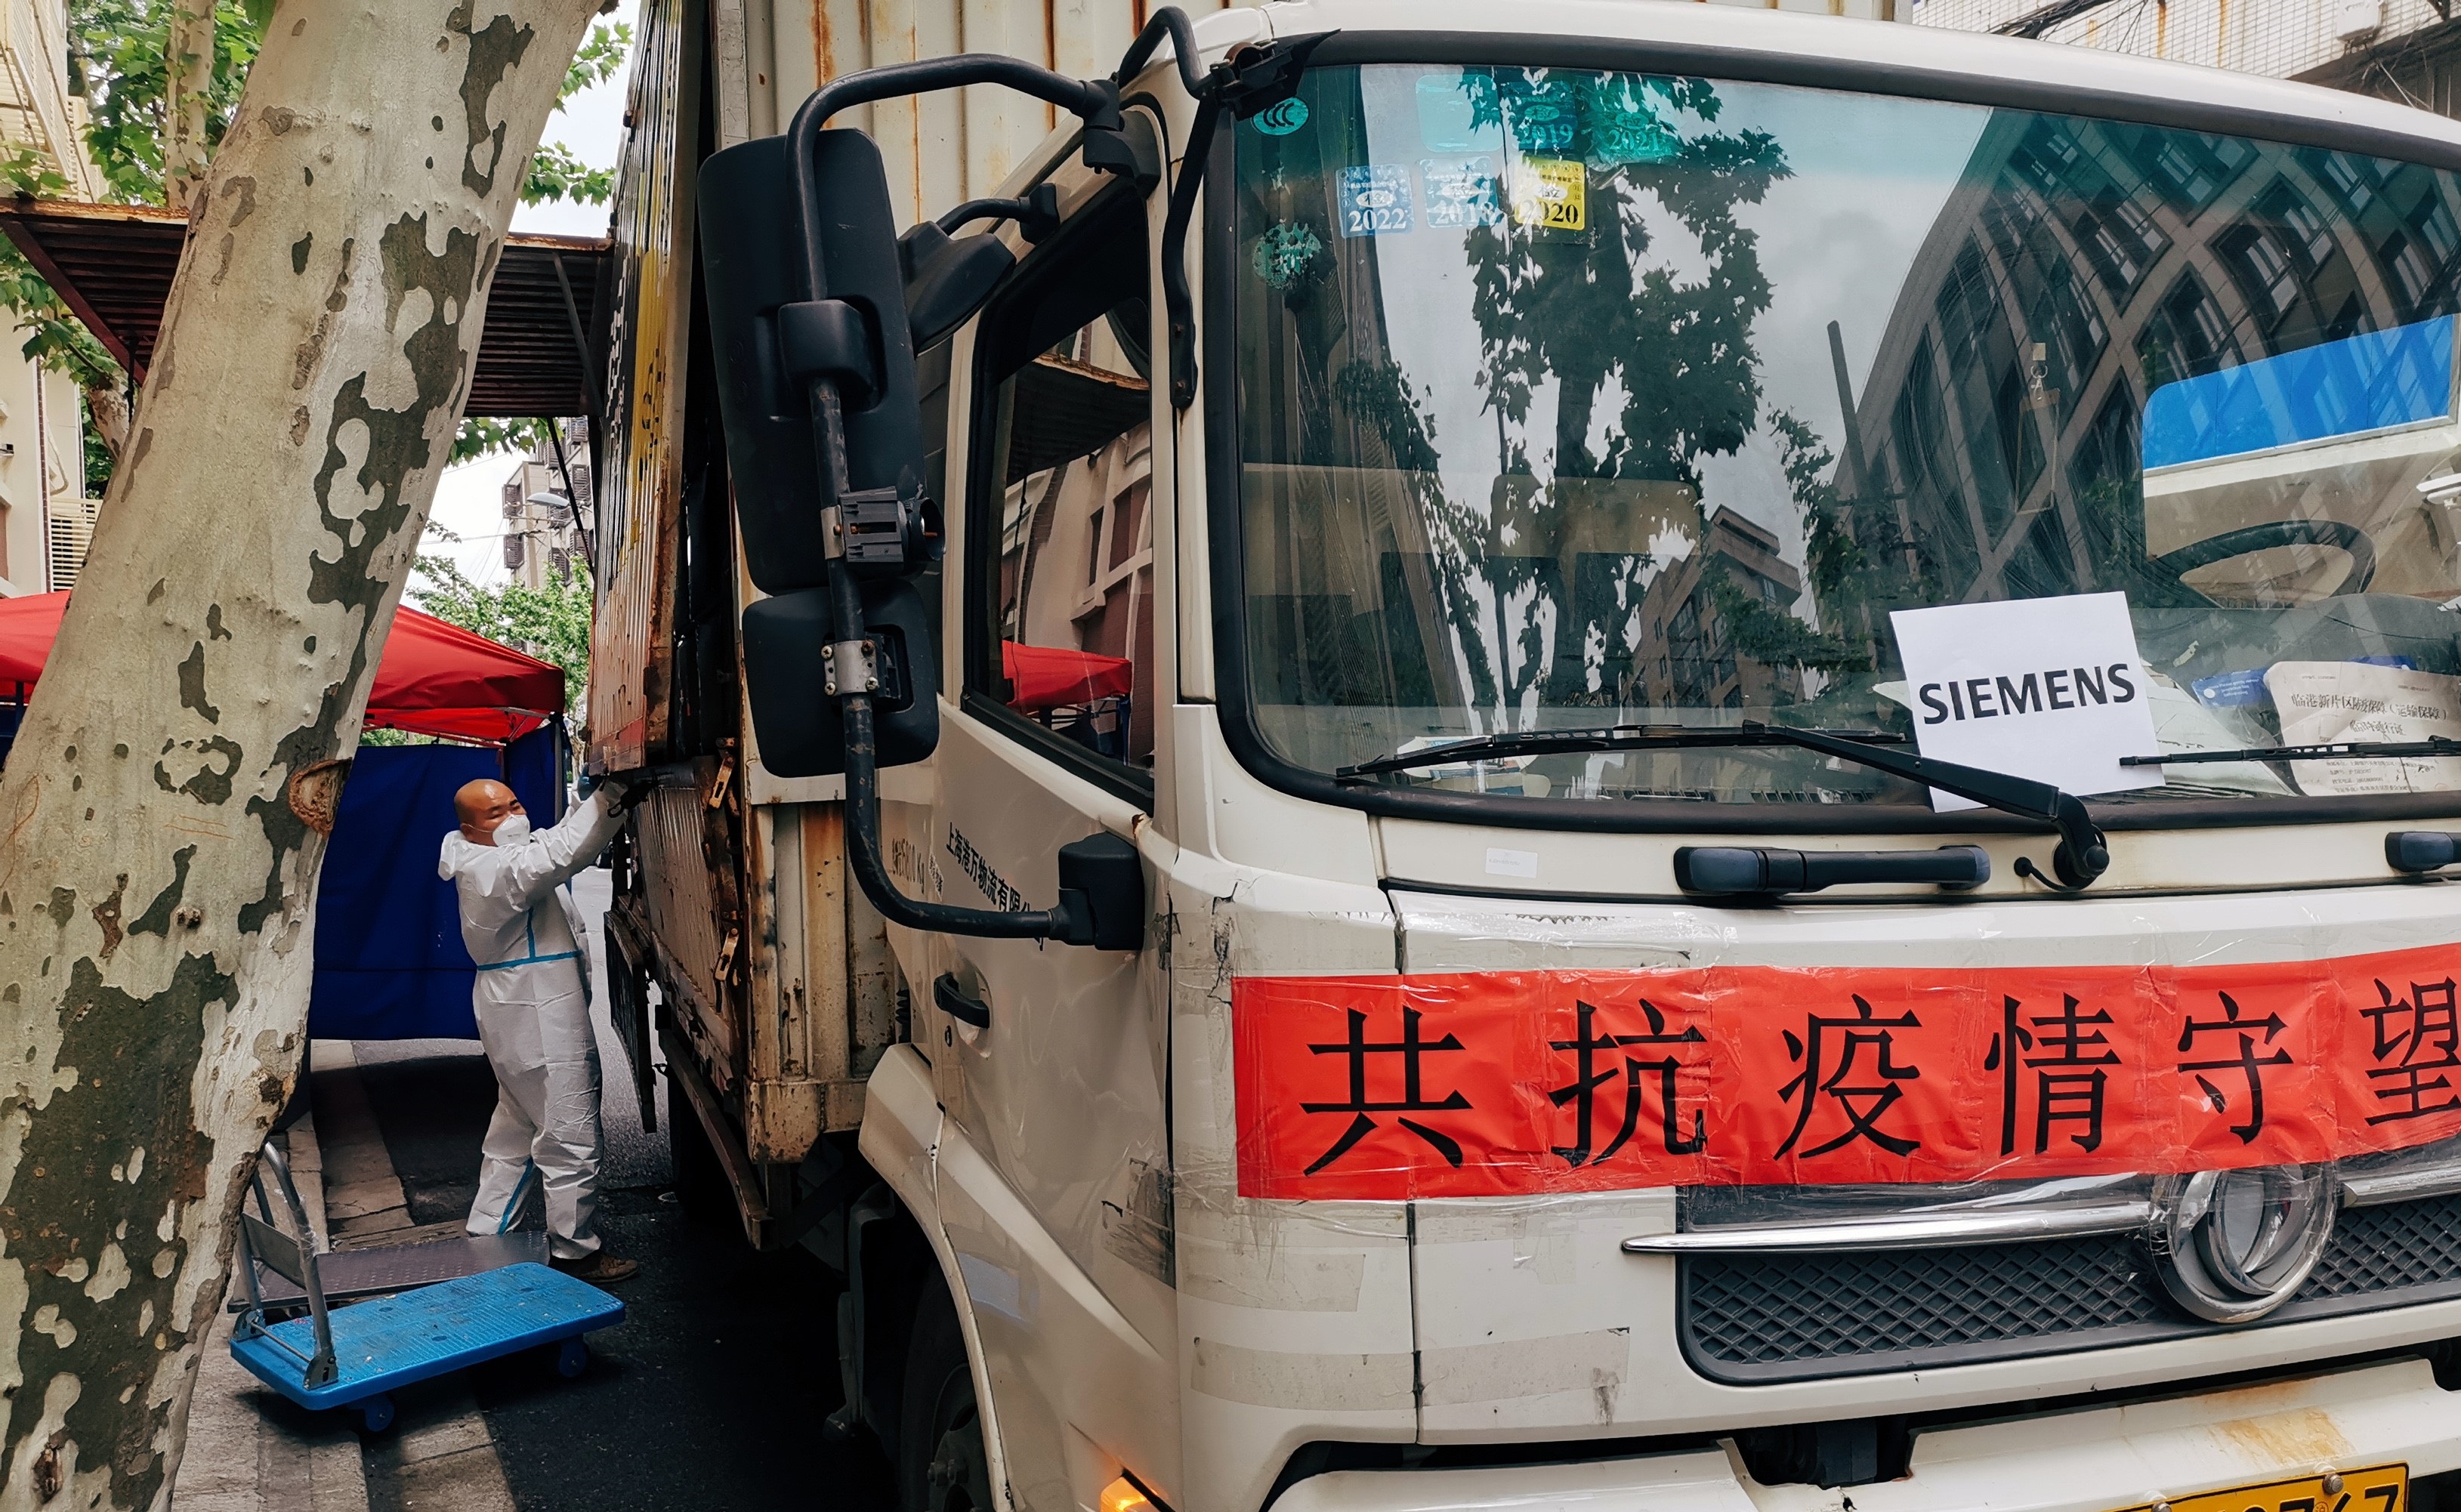 西门子捐赠防护物资 助力上海一线防疫